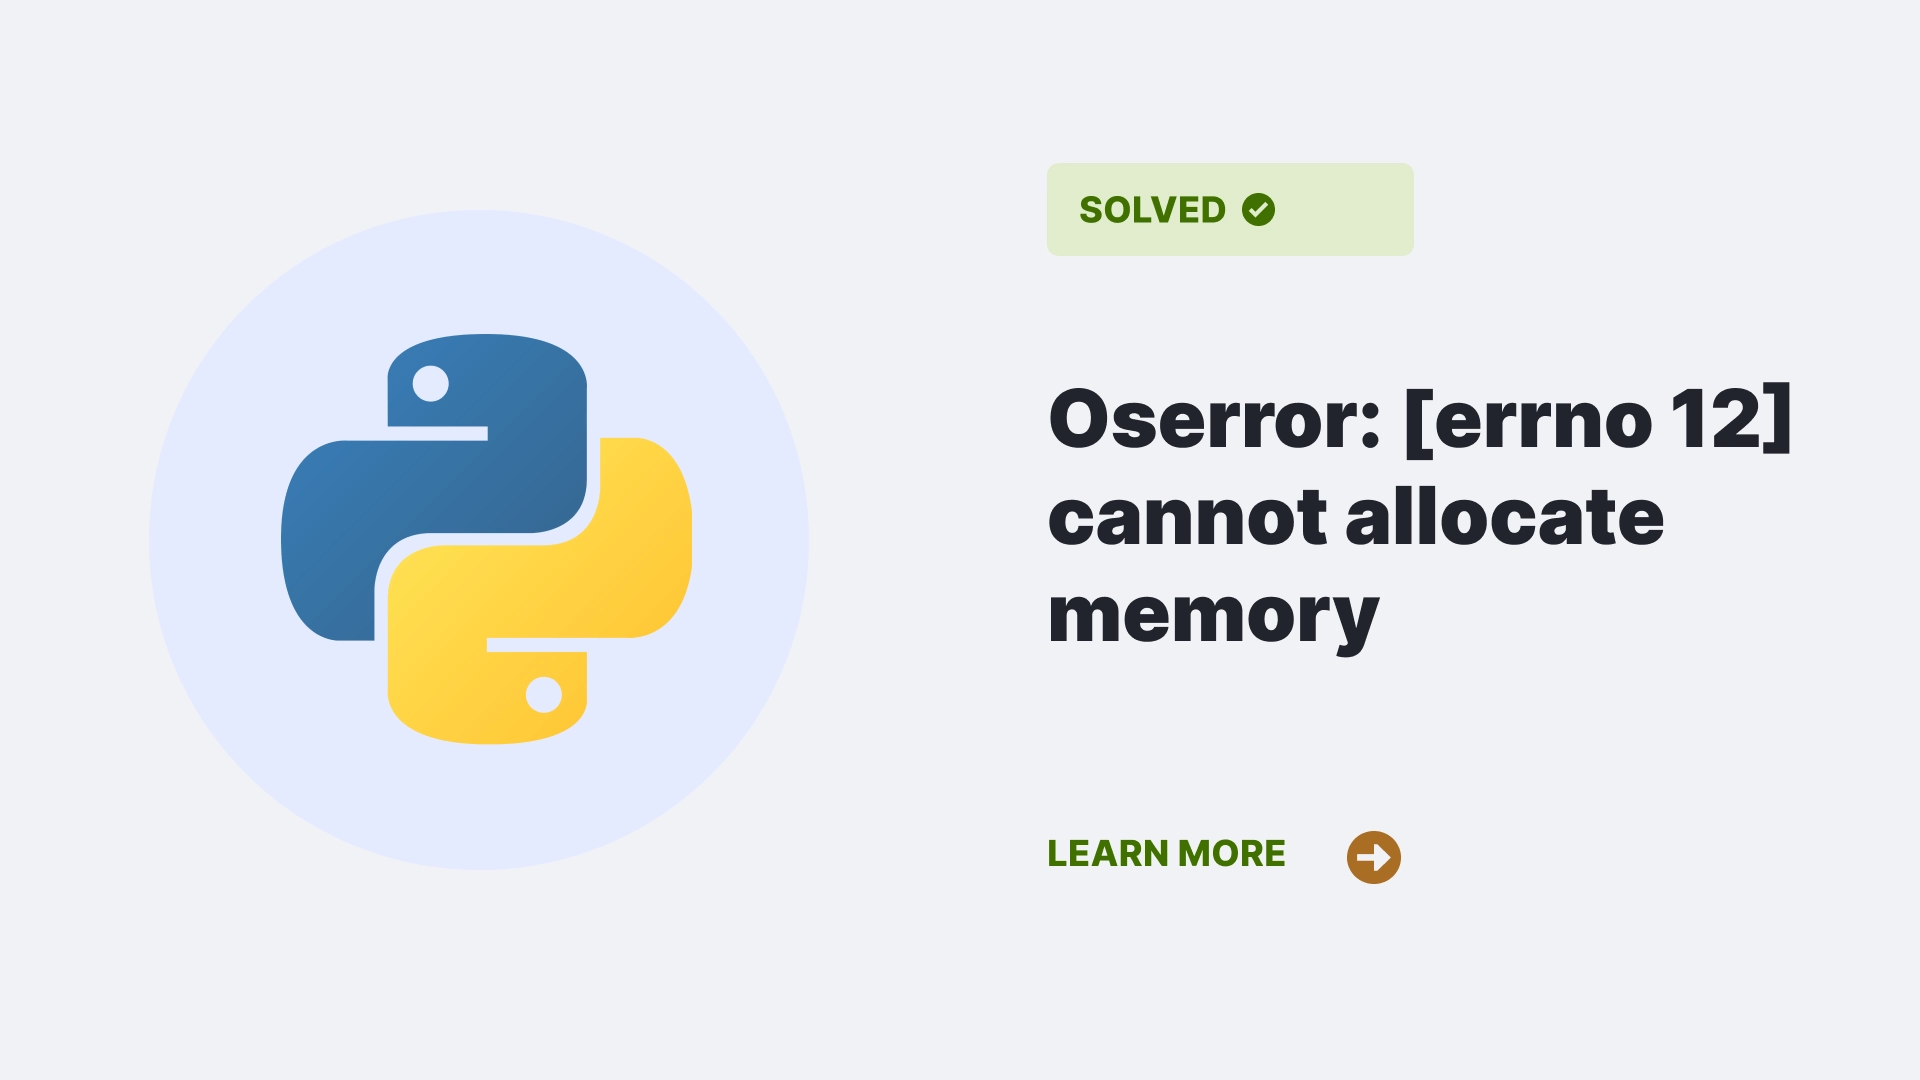 Oserror: [errno 12] cannot allocate memory